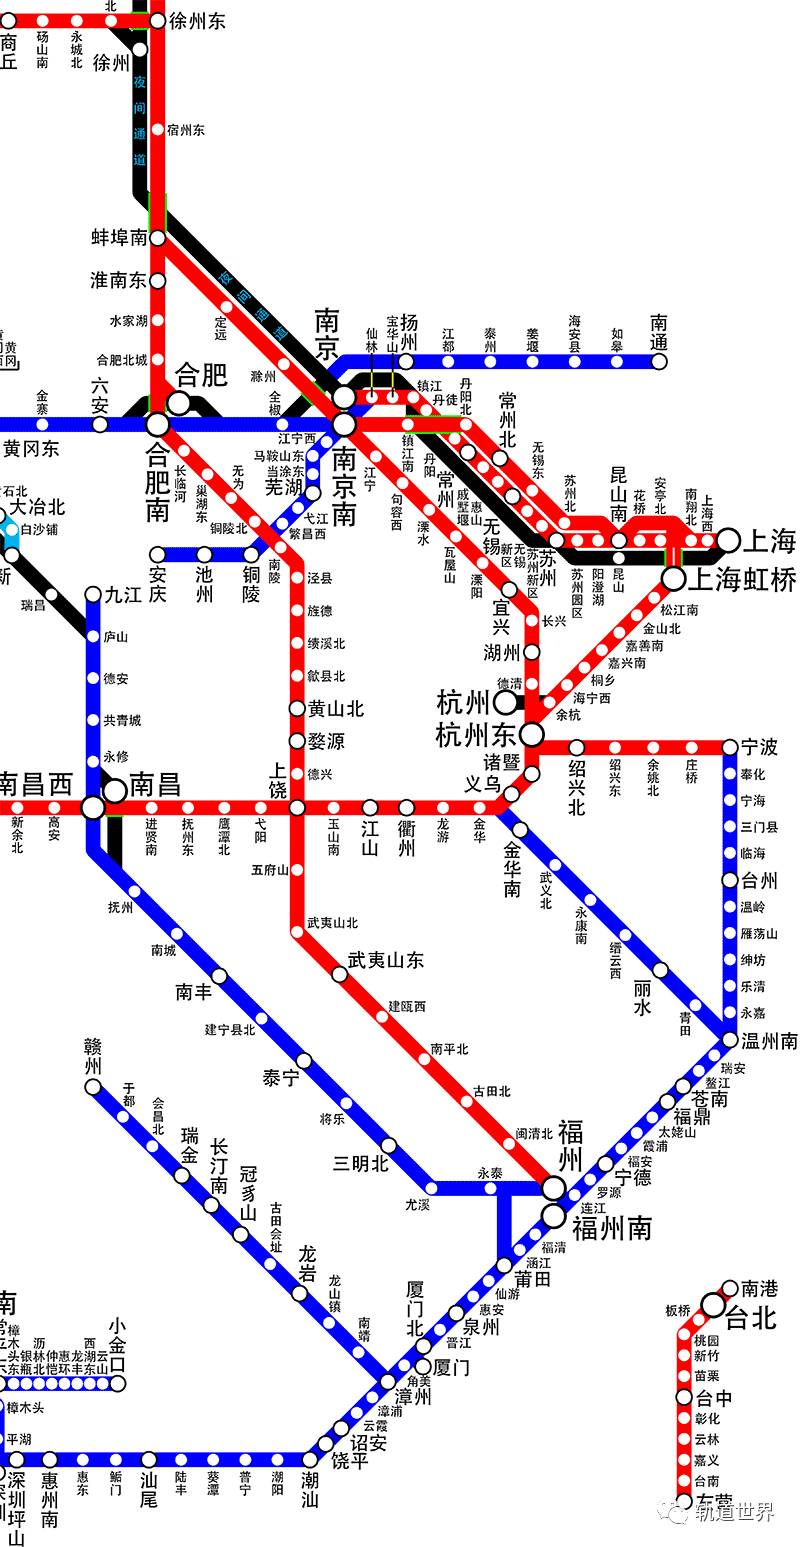 中国高速铁路运营线路图(高清)2017年7月最新版